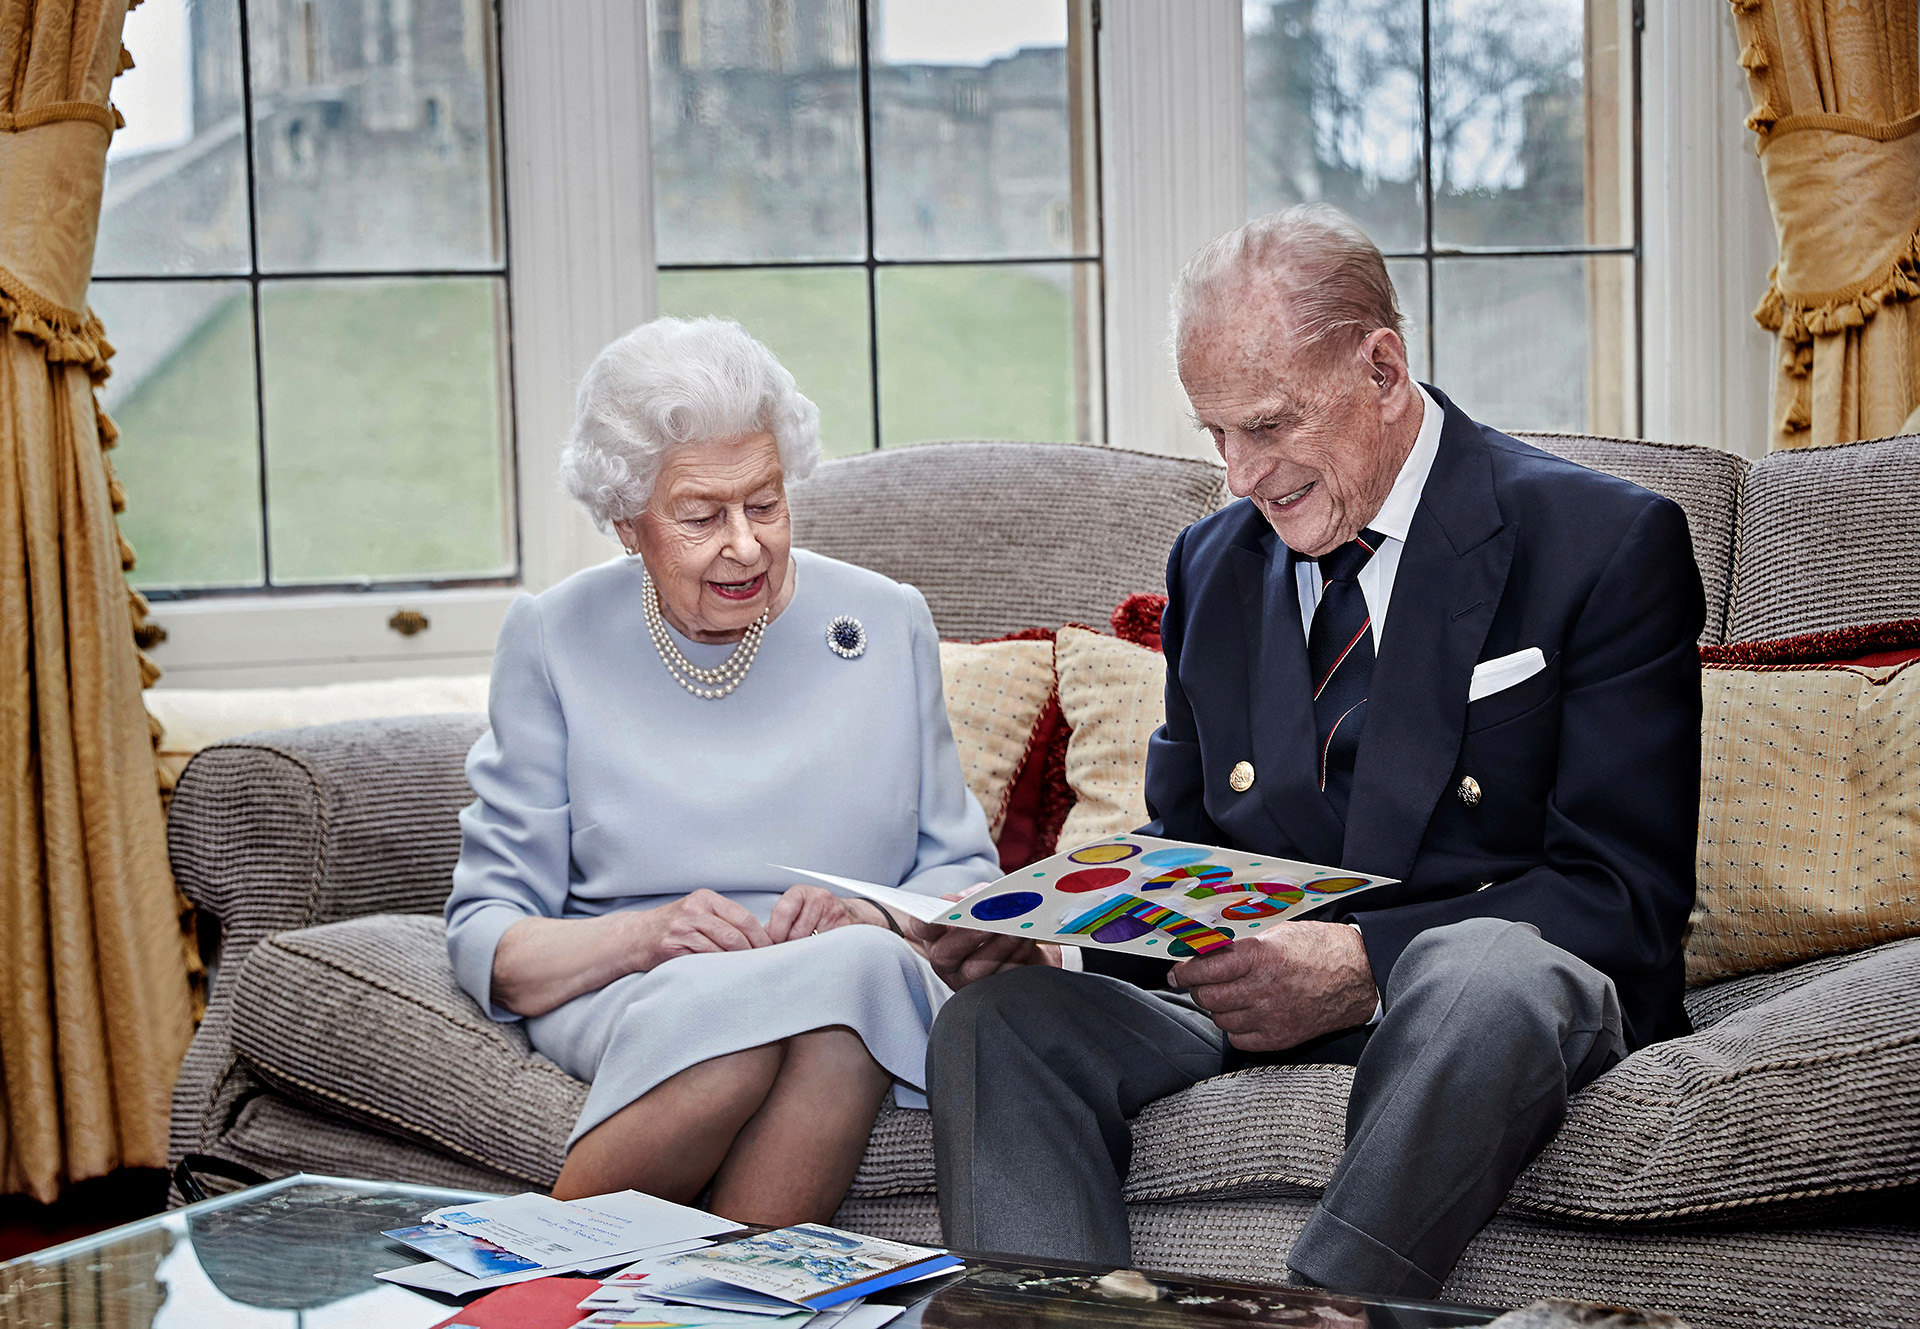 La última fotografía oficial del duque de Edimburgo junto con su esposa, Isabel II. Fue tomada con motivo de su 73.º aniversario de boda, en noviembre de 2020